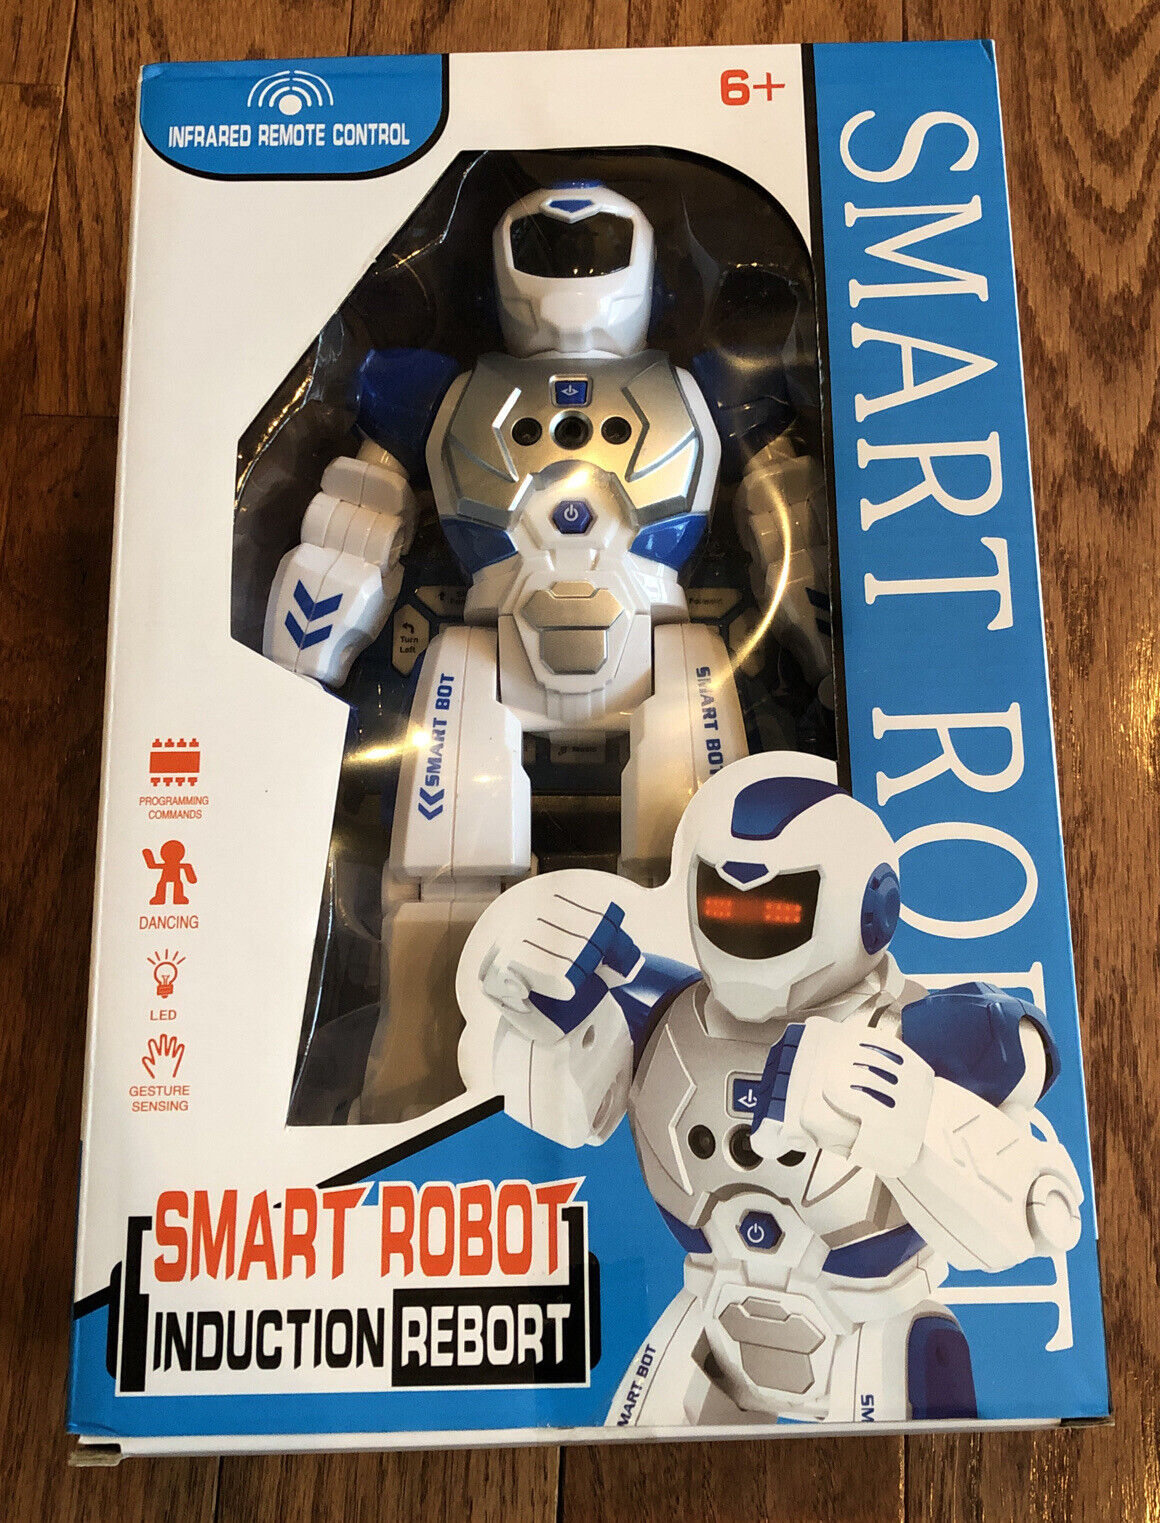 Smart Robot Induction Rebort Unbranded